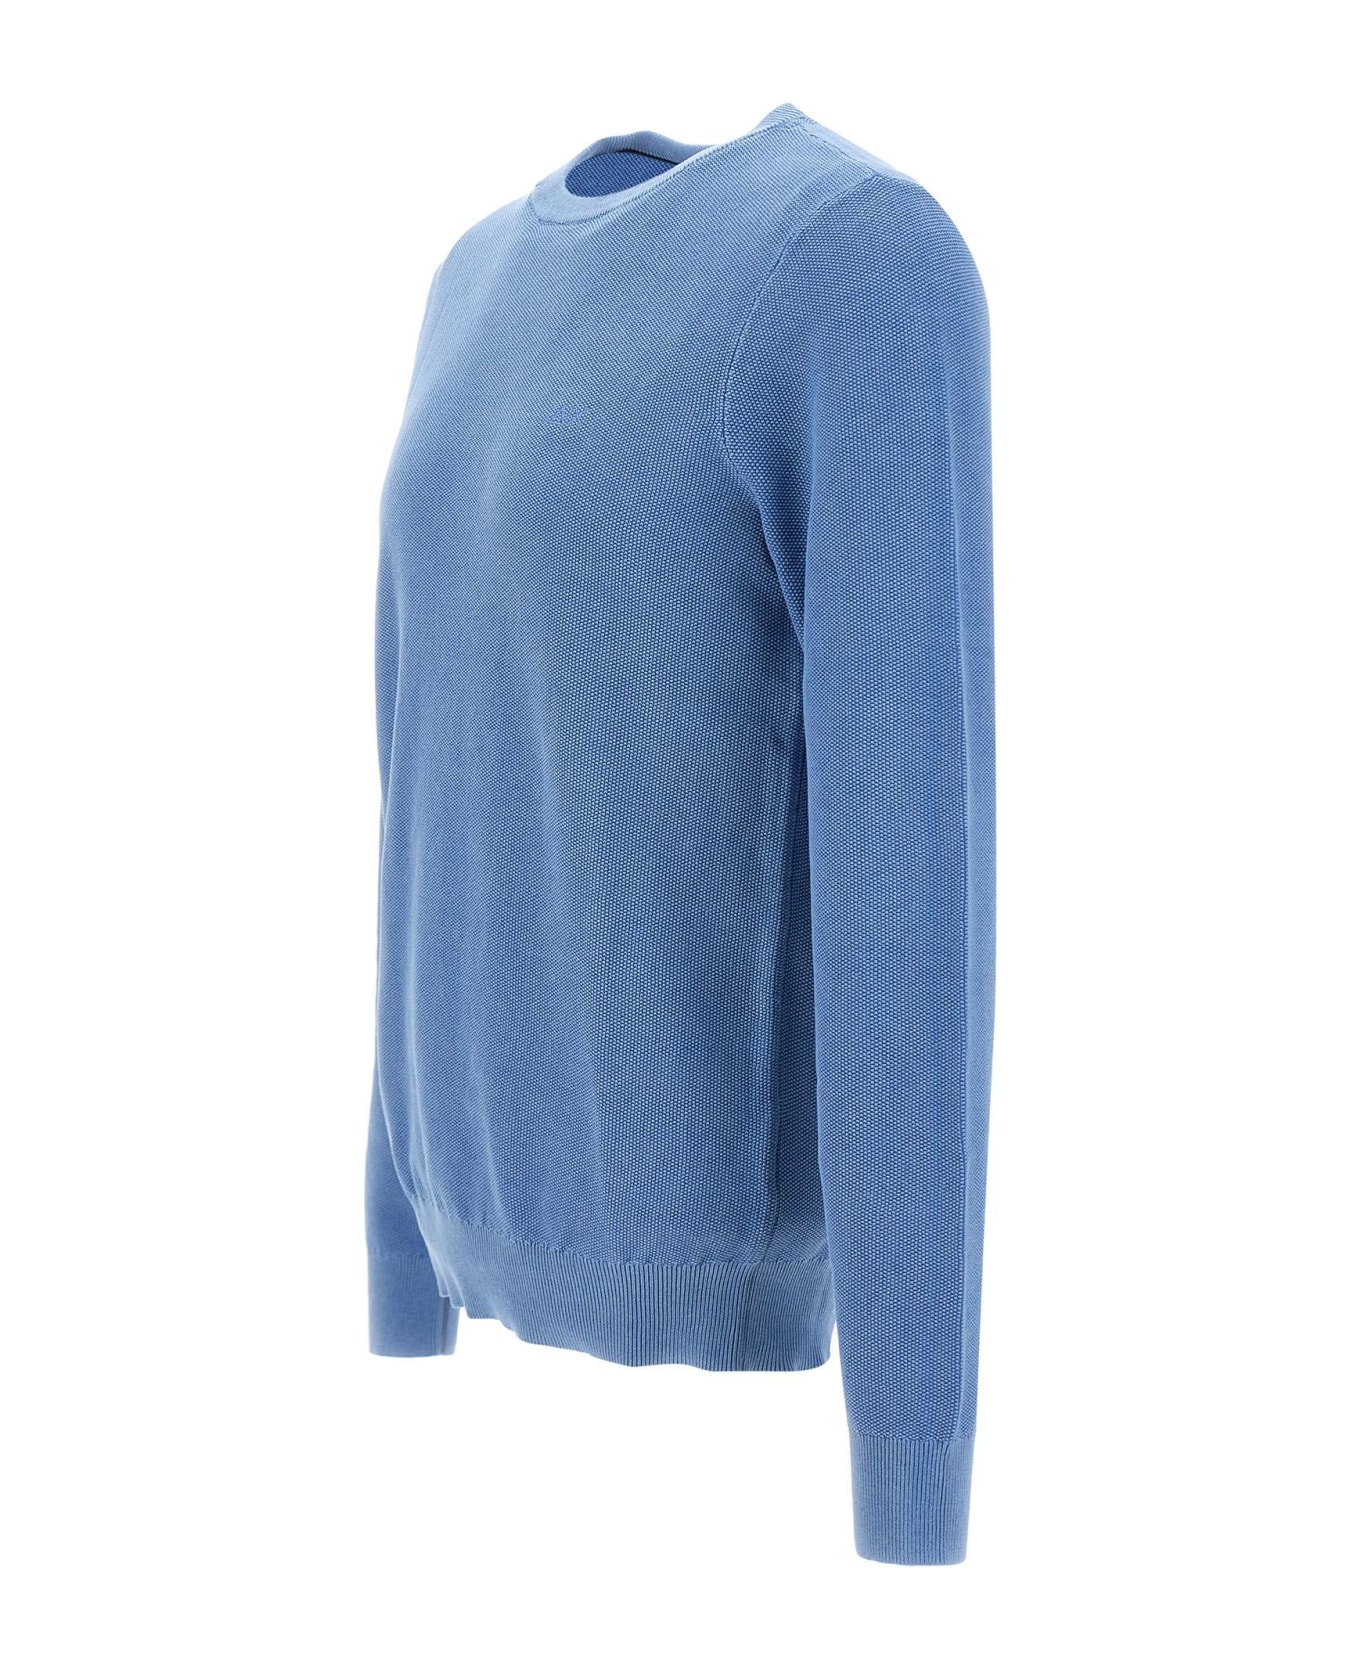 Sun 68 "round Vintage" Sweater Cotton - BLUE